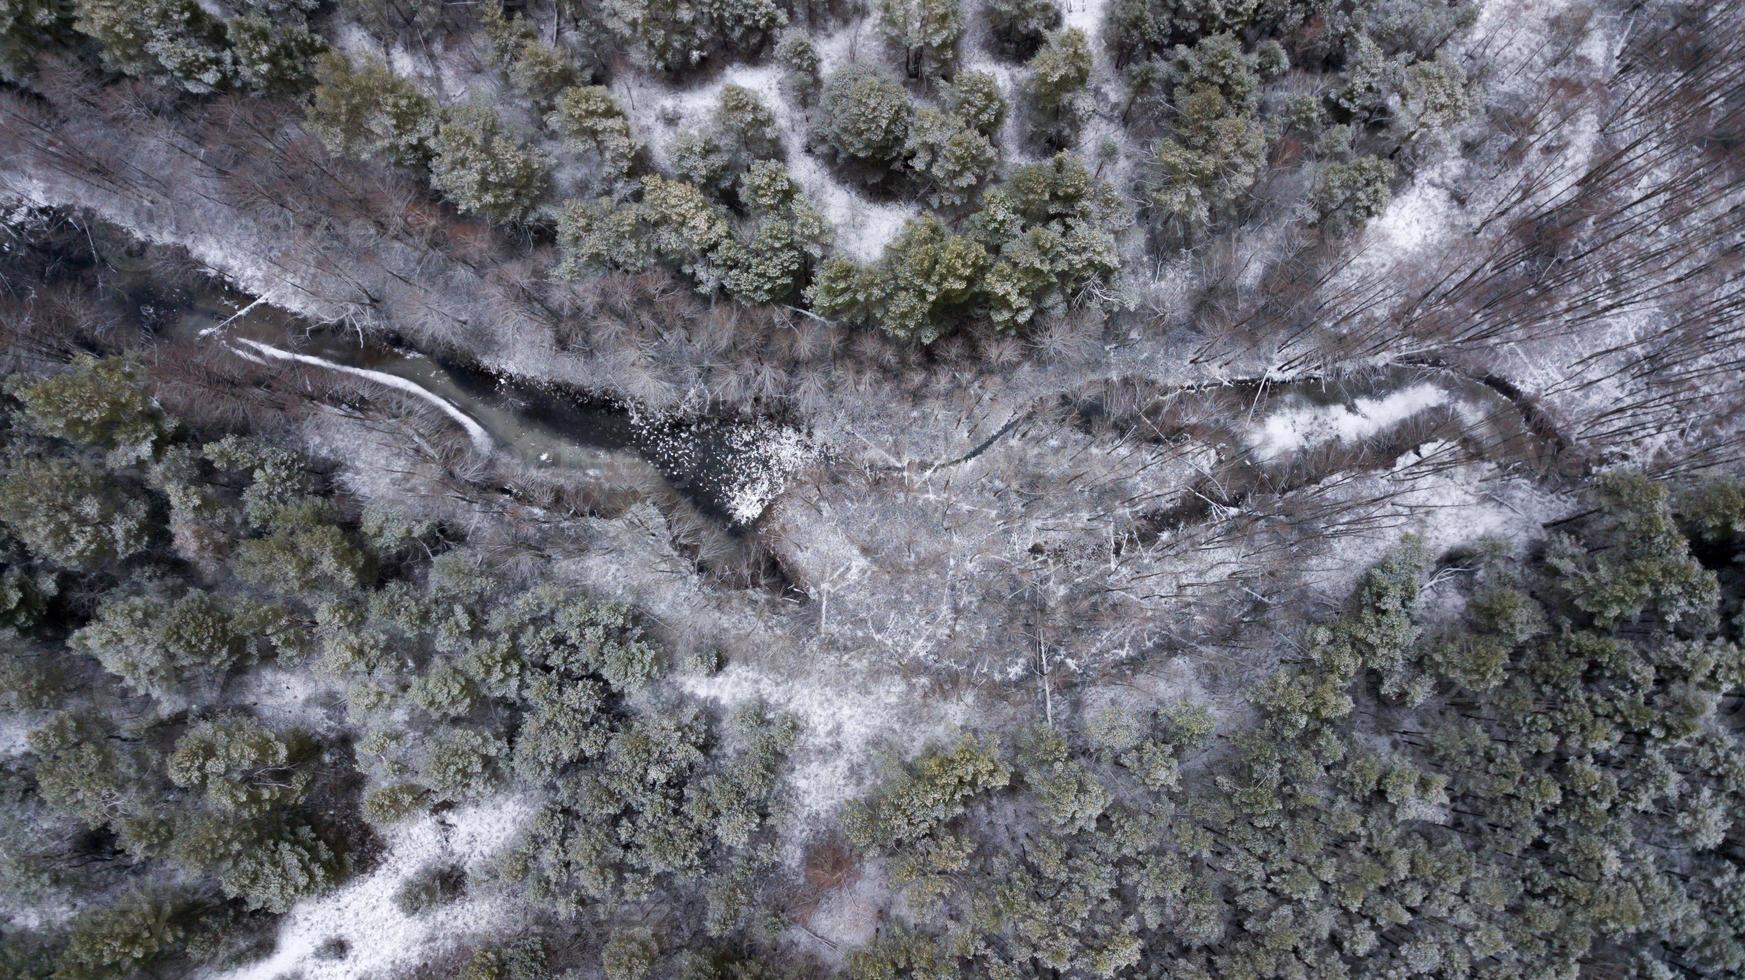 lago ghiacciato nella foresta invernale. fotografia aerea con quadrirotore foto